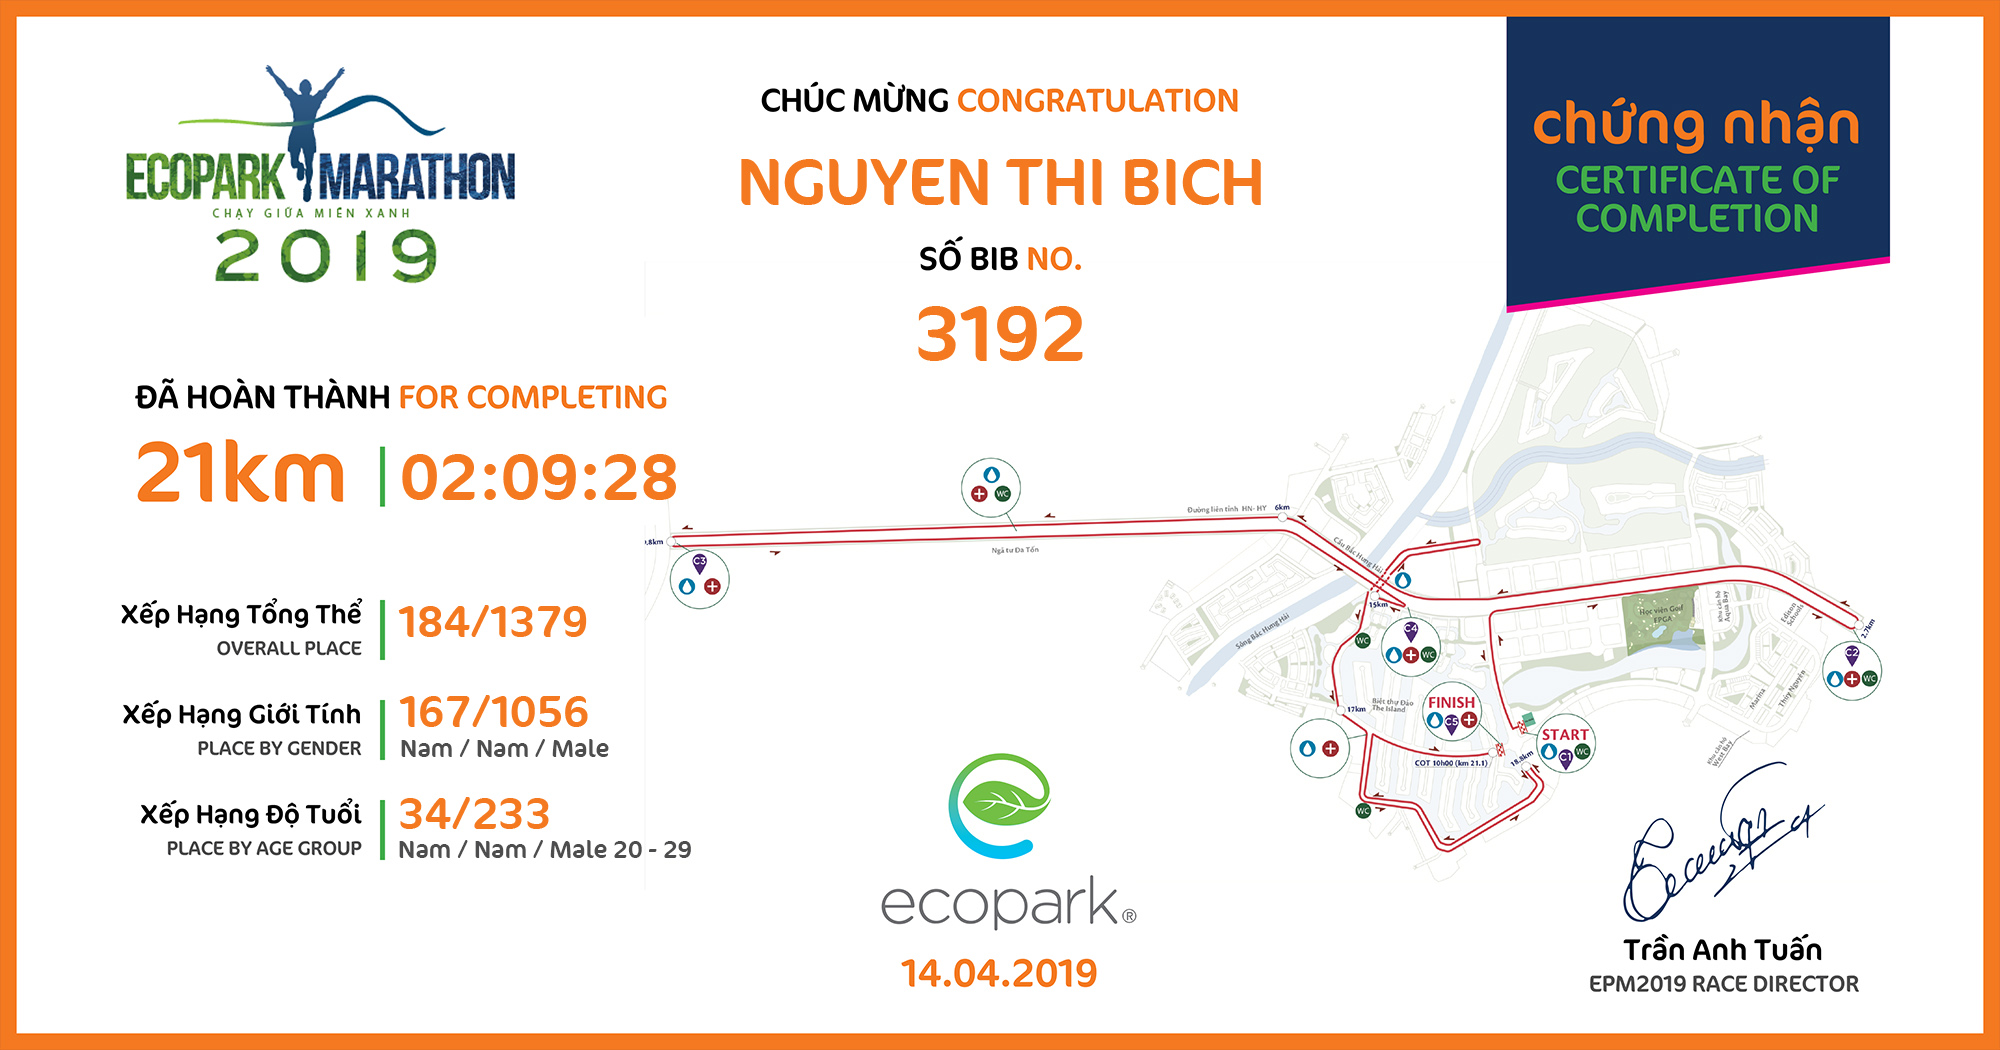 3192 - Nguyen Thi Bich